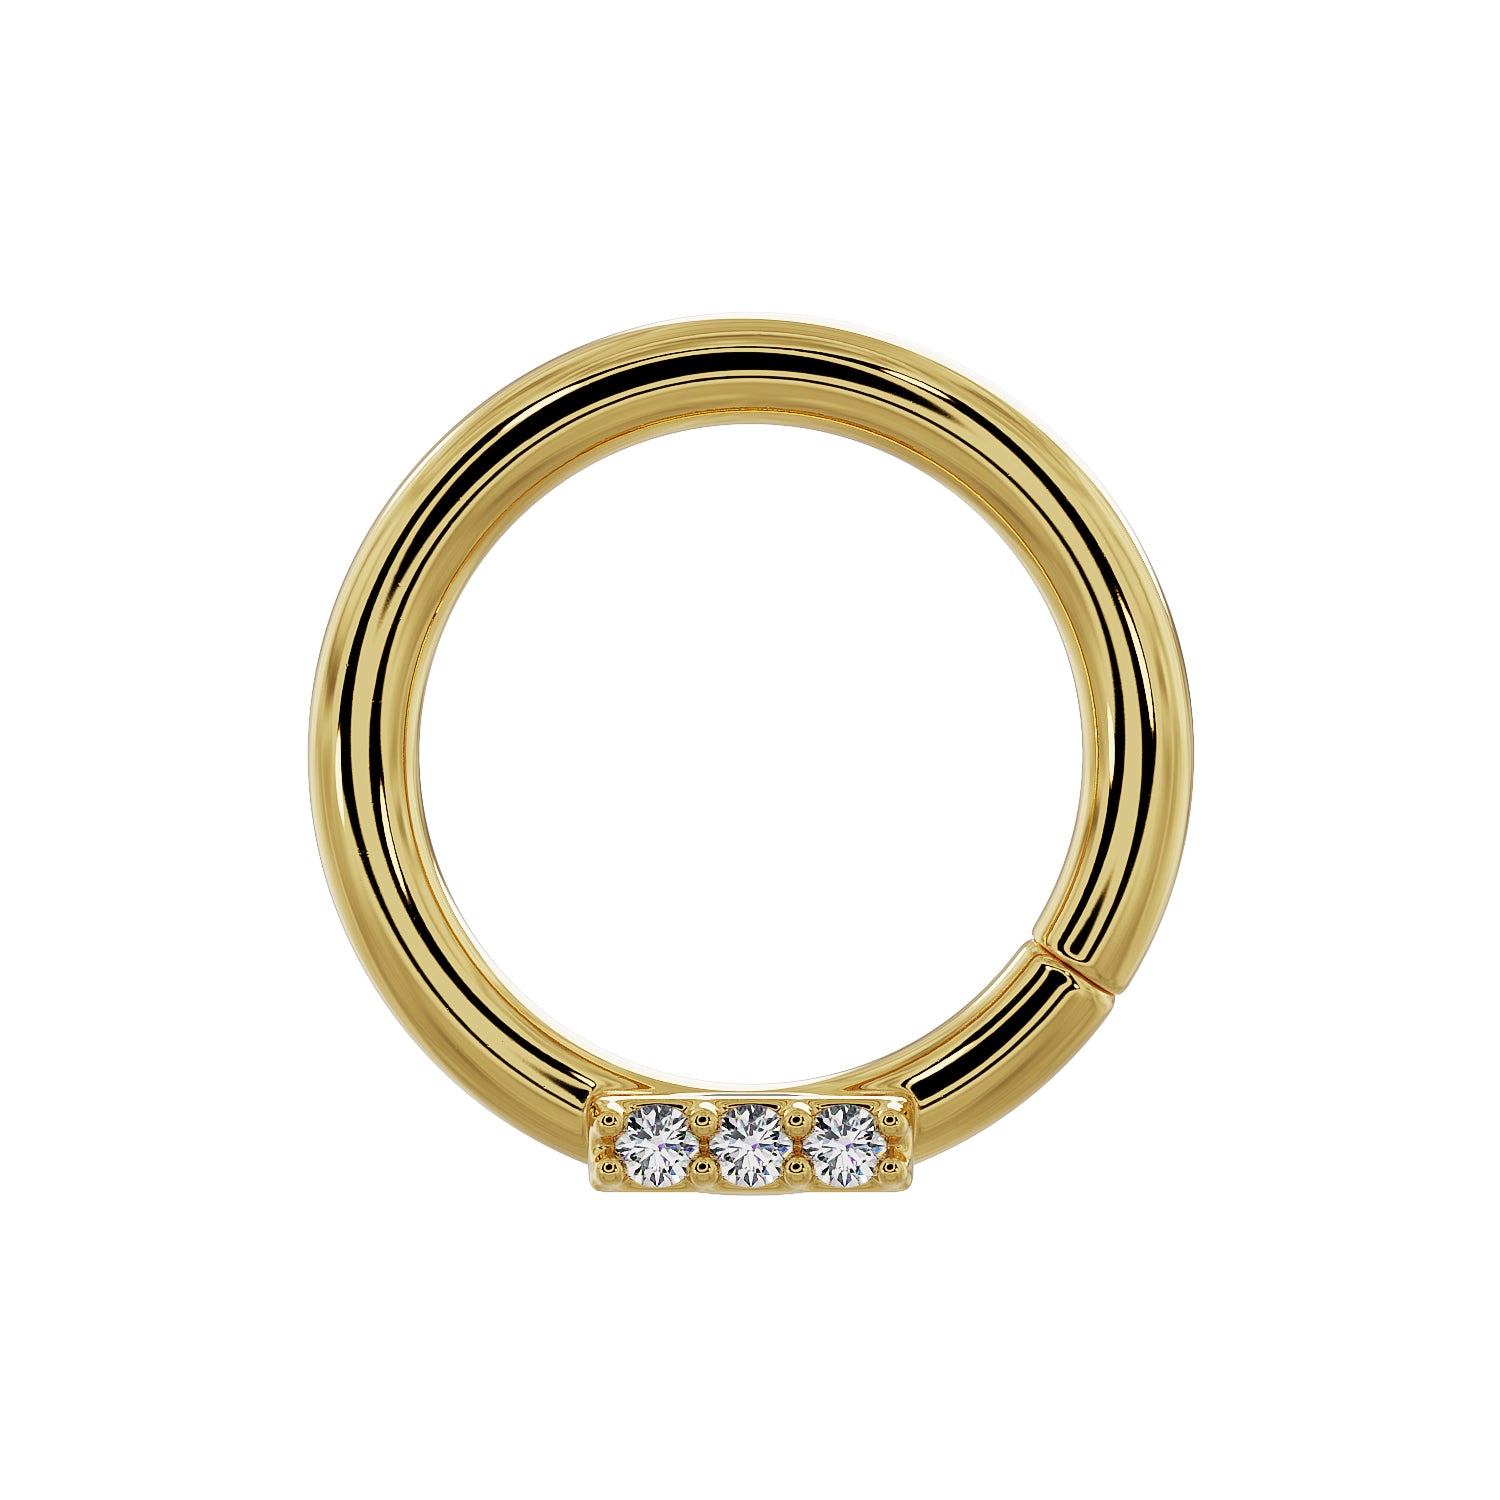 Septum Ring | All New 14k Gold Septum Rings | FreshTrends